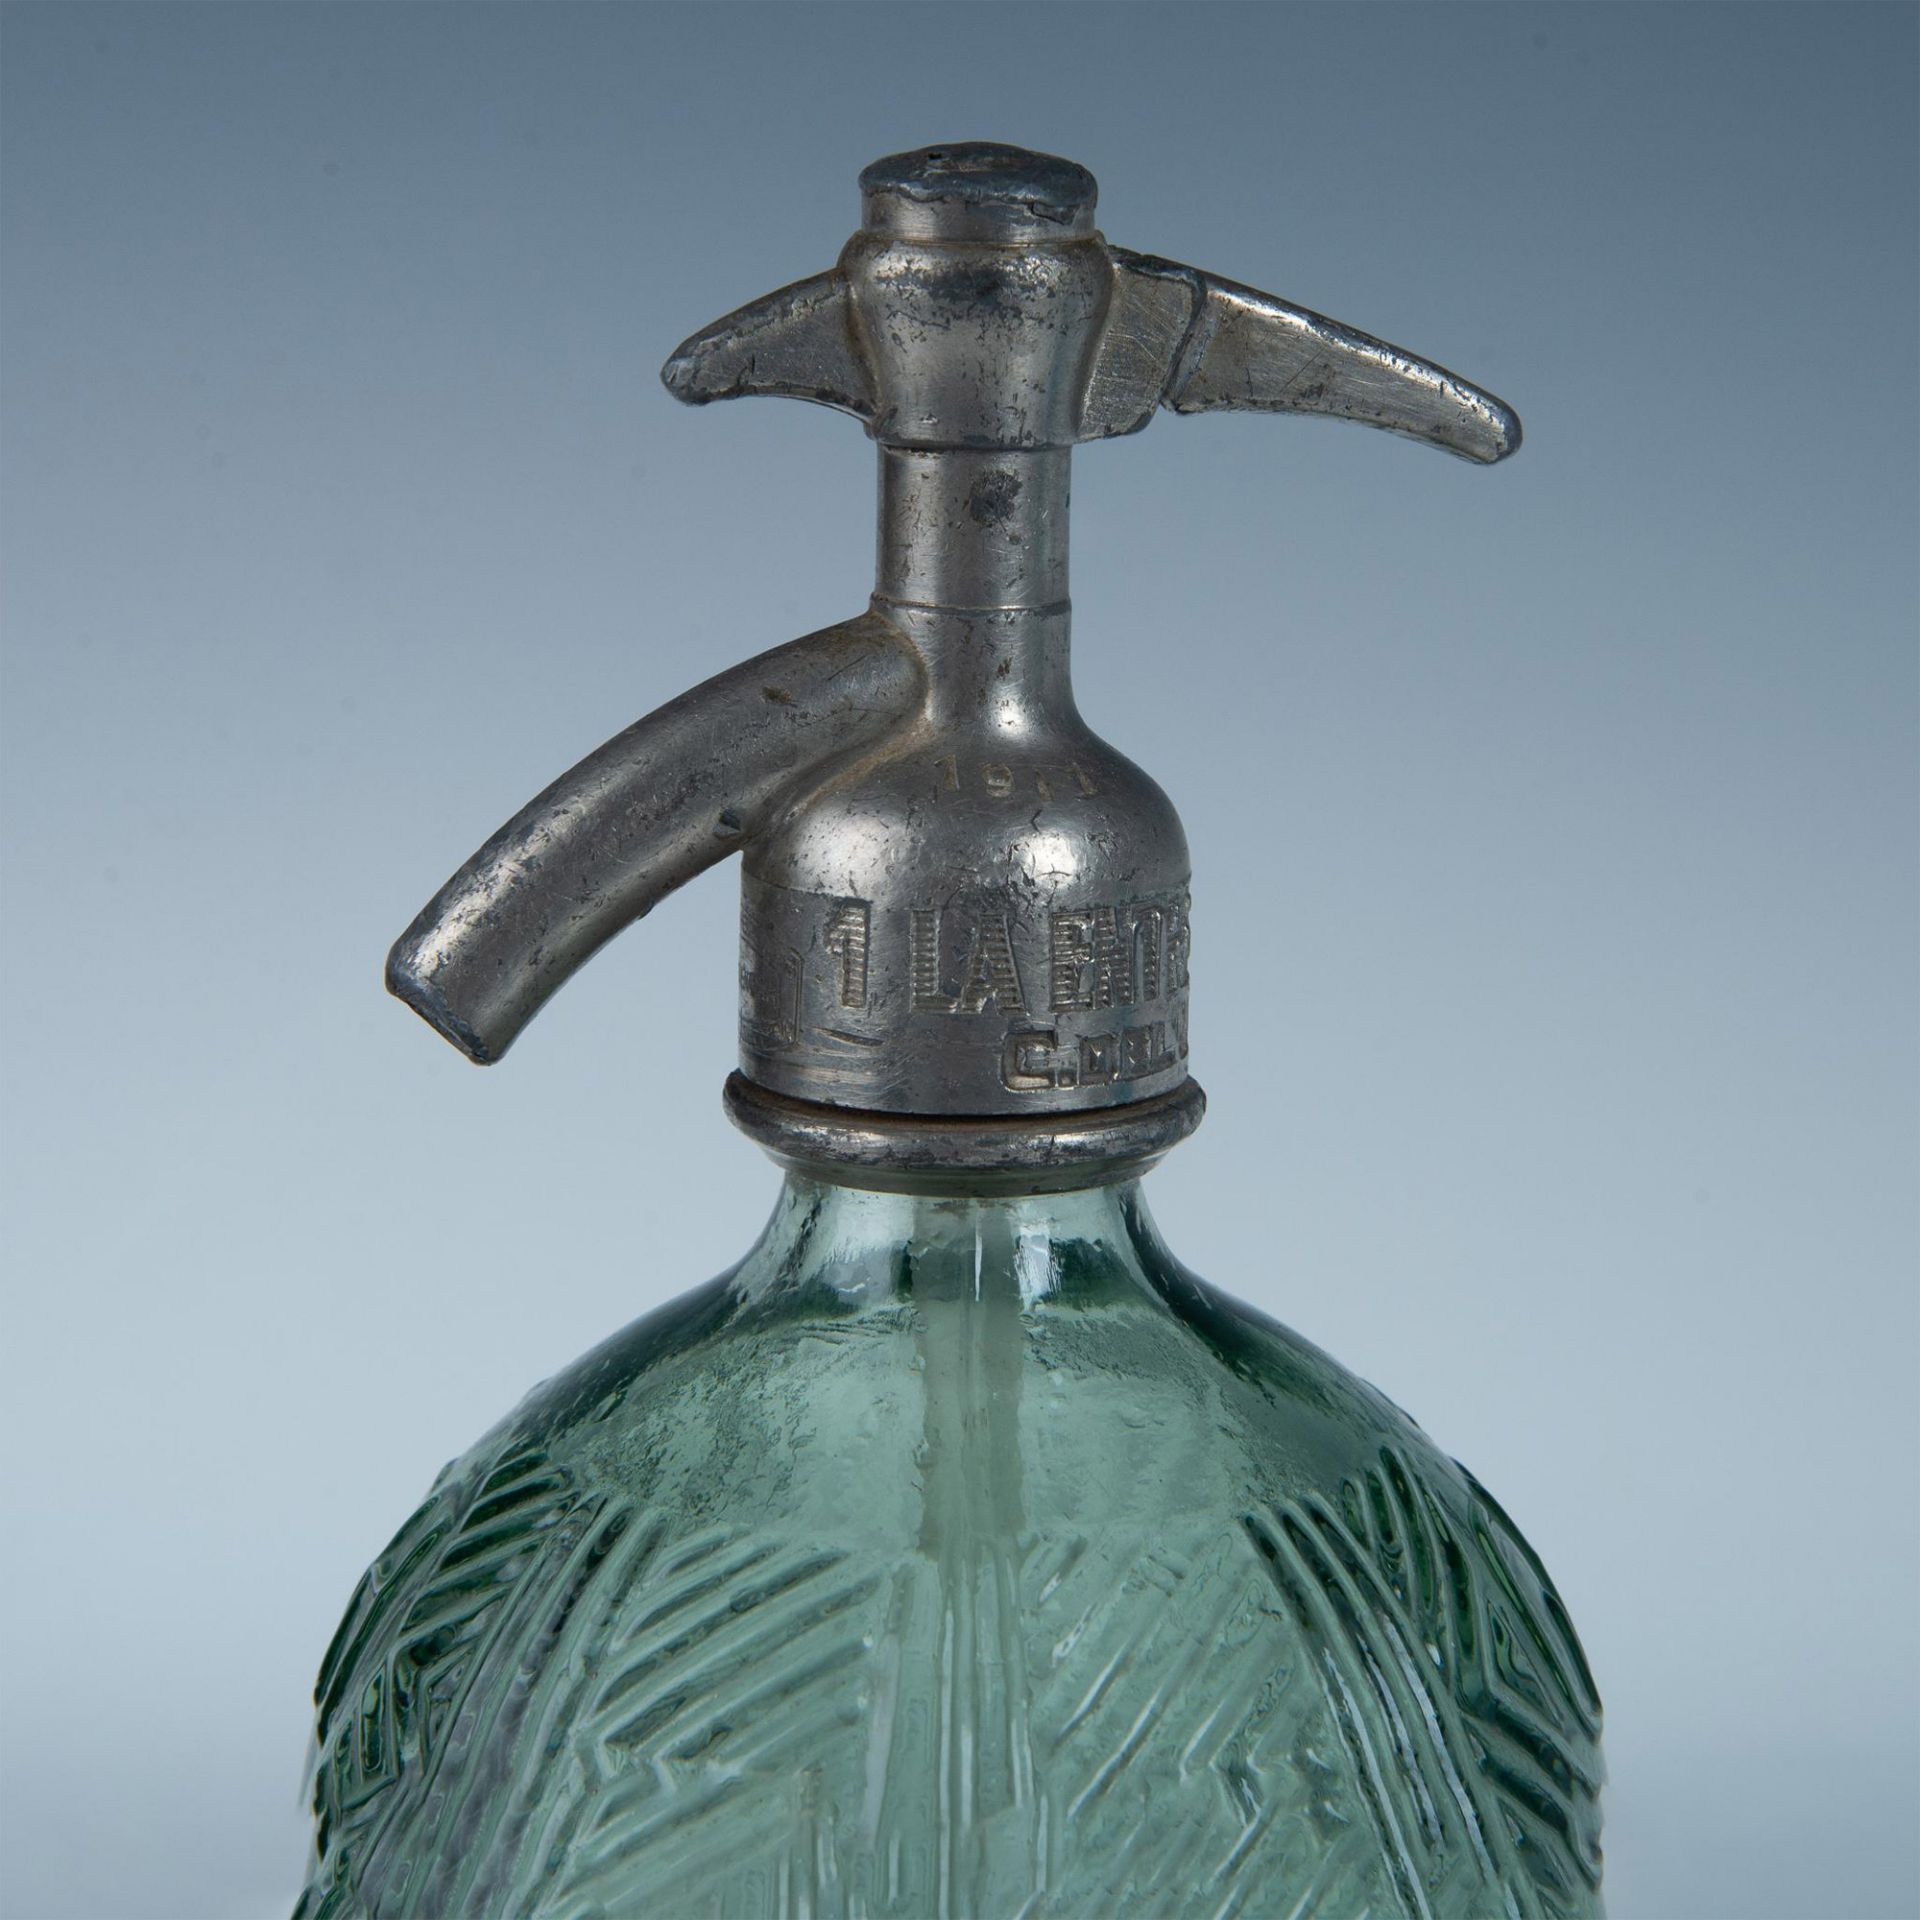 Antique Seltzer Bottle Gonzalez Hnos, Argentina - Bild 2 aus 7